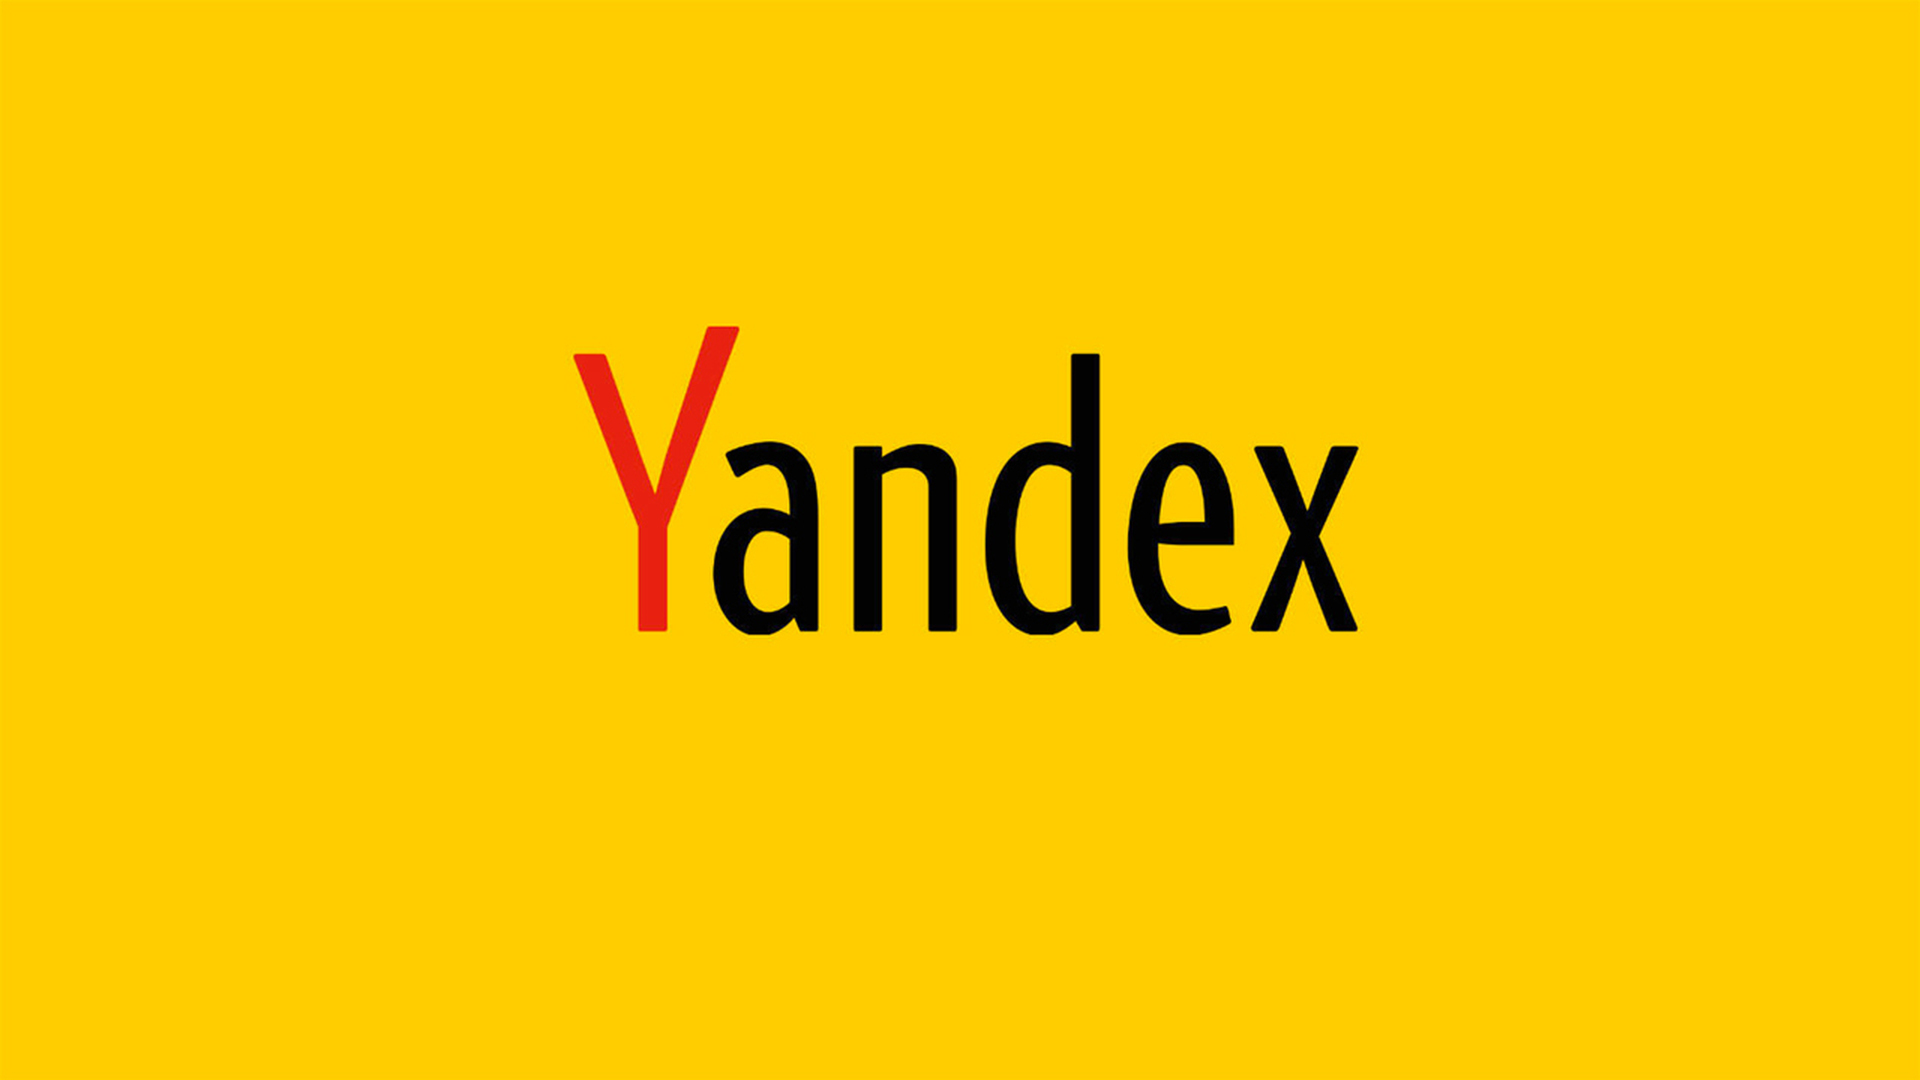 Яндекс, Сбер и VK отказались от идеи создания совместной мобильной ОС на основе открытого кода AOSP (Android) и сосредоточились на разработке собственных версий — Ъ